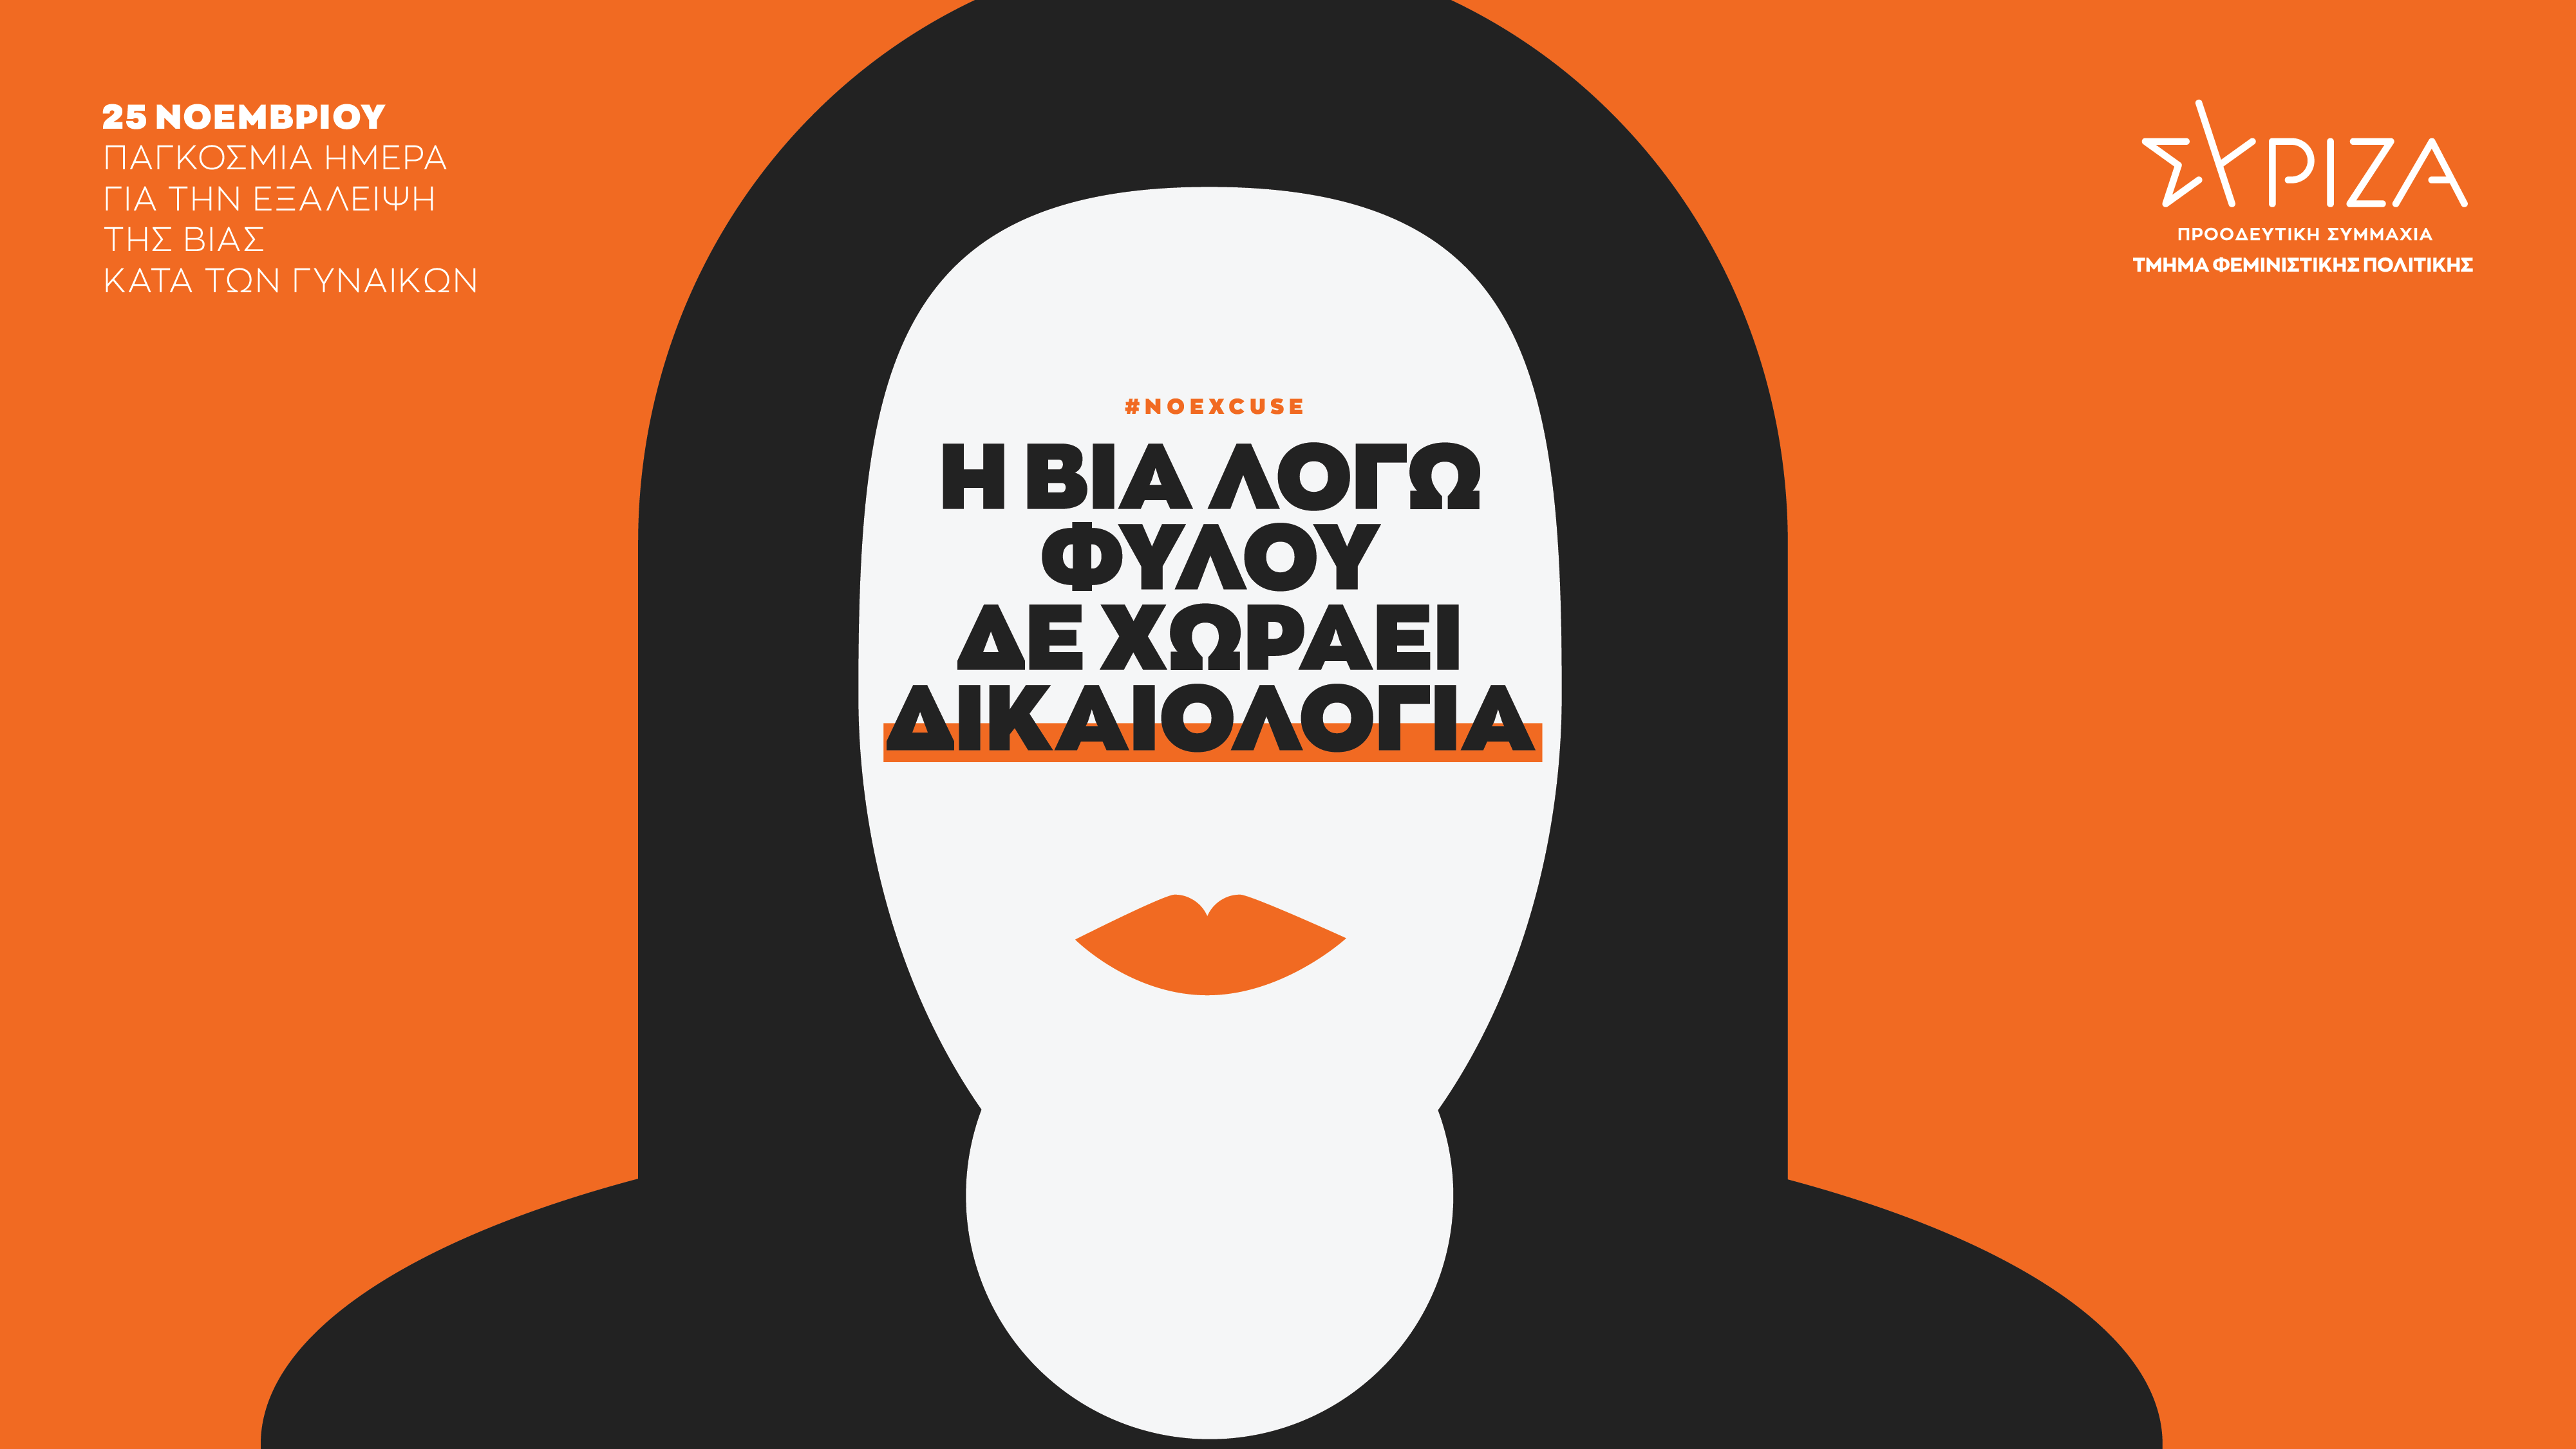 Τμήμα Φεμινιστικής Πολιτικής ΣΥΡΙΖΑ-ΠΣ: Η βία λόγω φύλου δε χωράει δικαιολογία